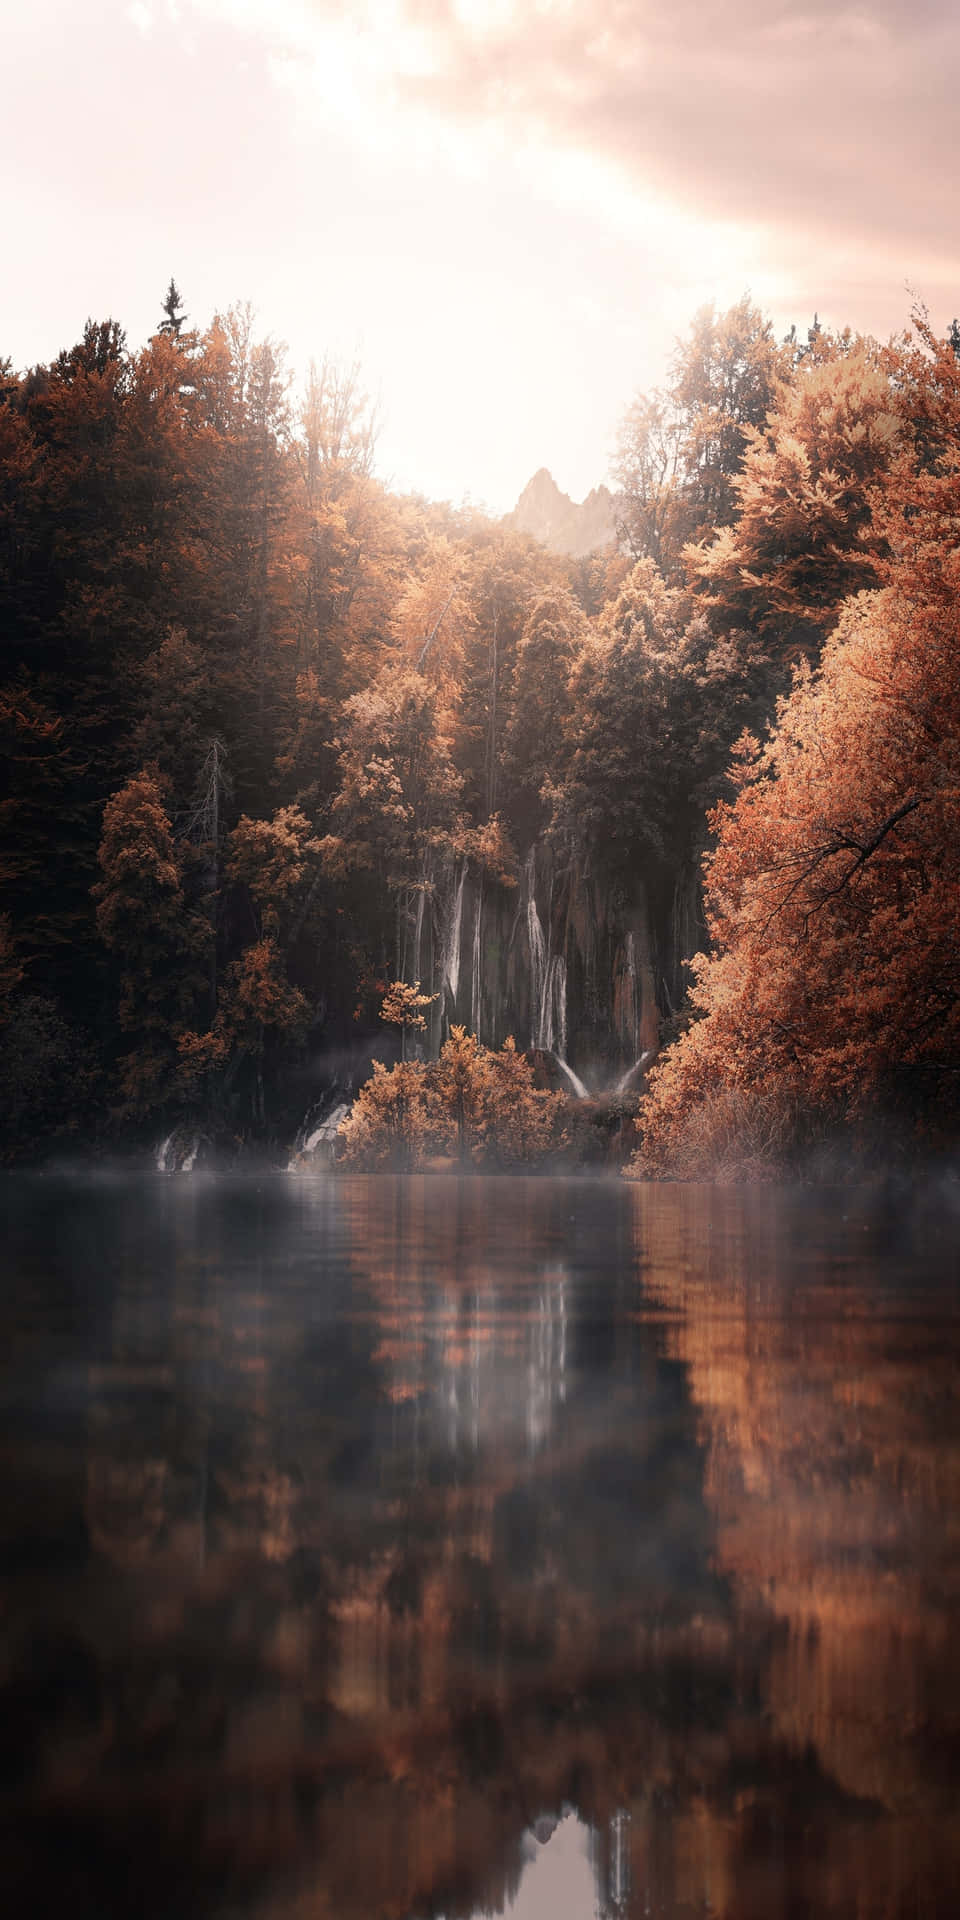 Pixel3 Herbst Hintergrund Mit Einem Von Orangenbäumen Umgebenen Fluss.